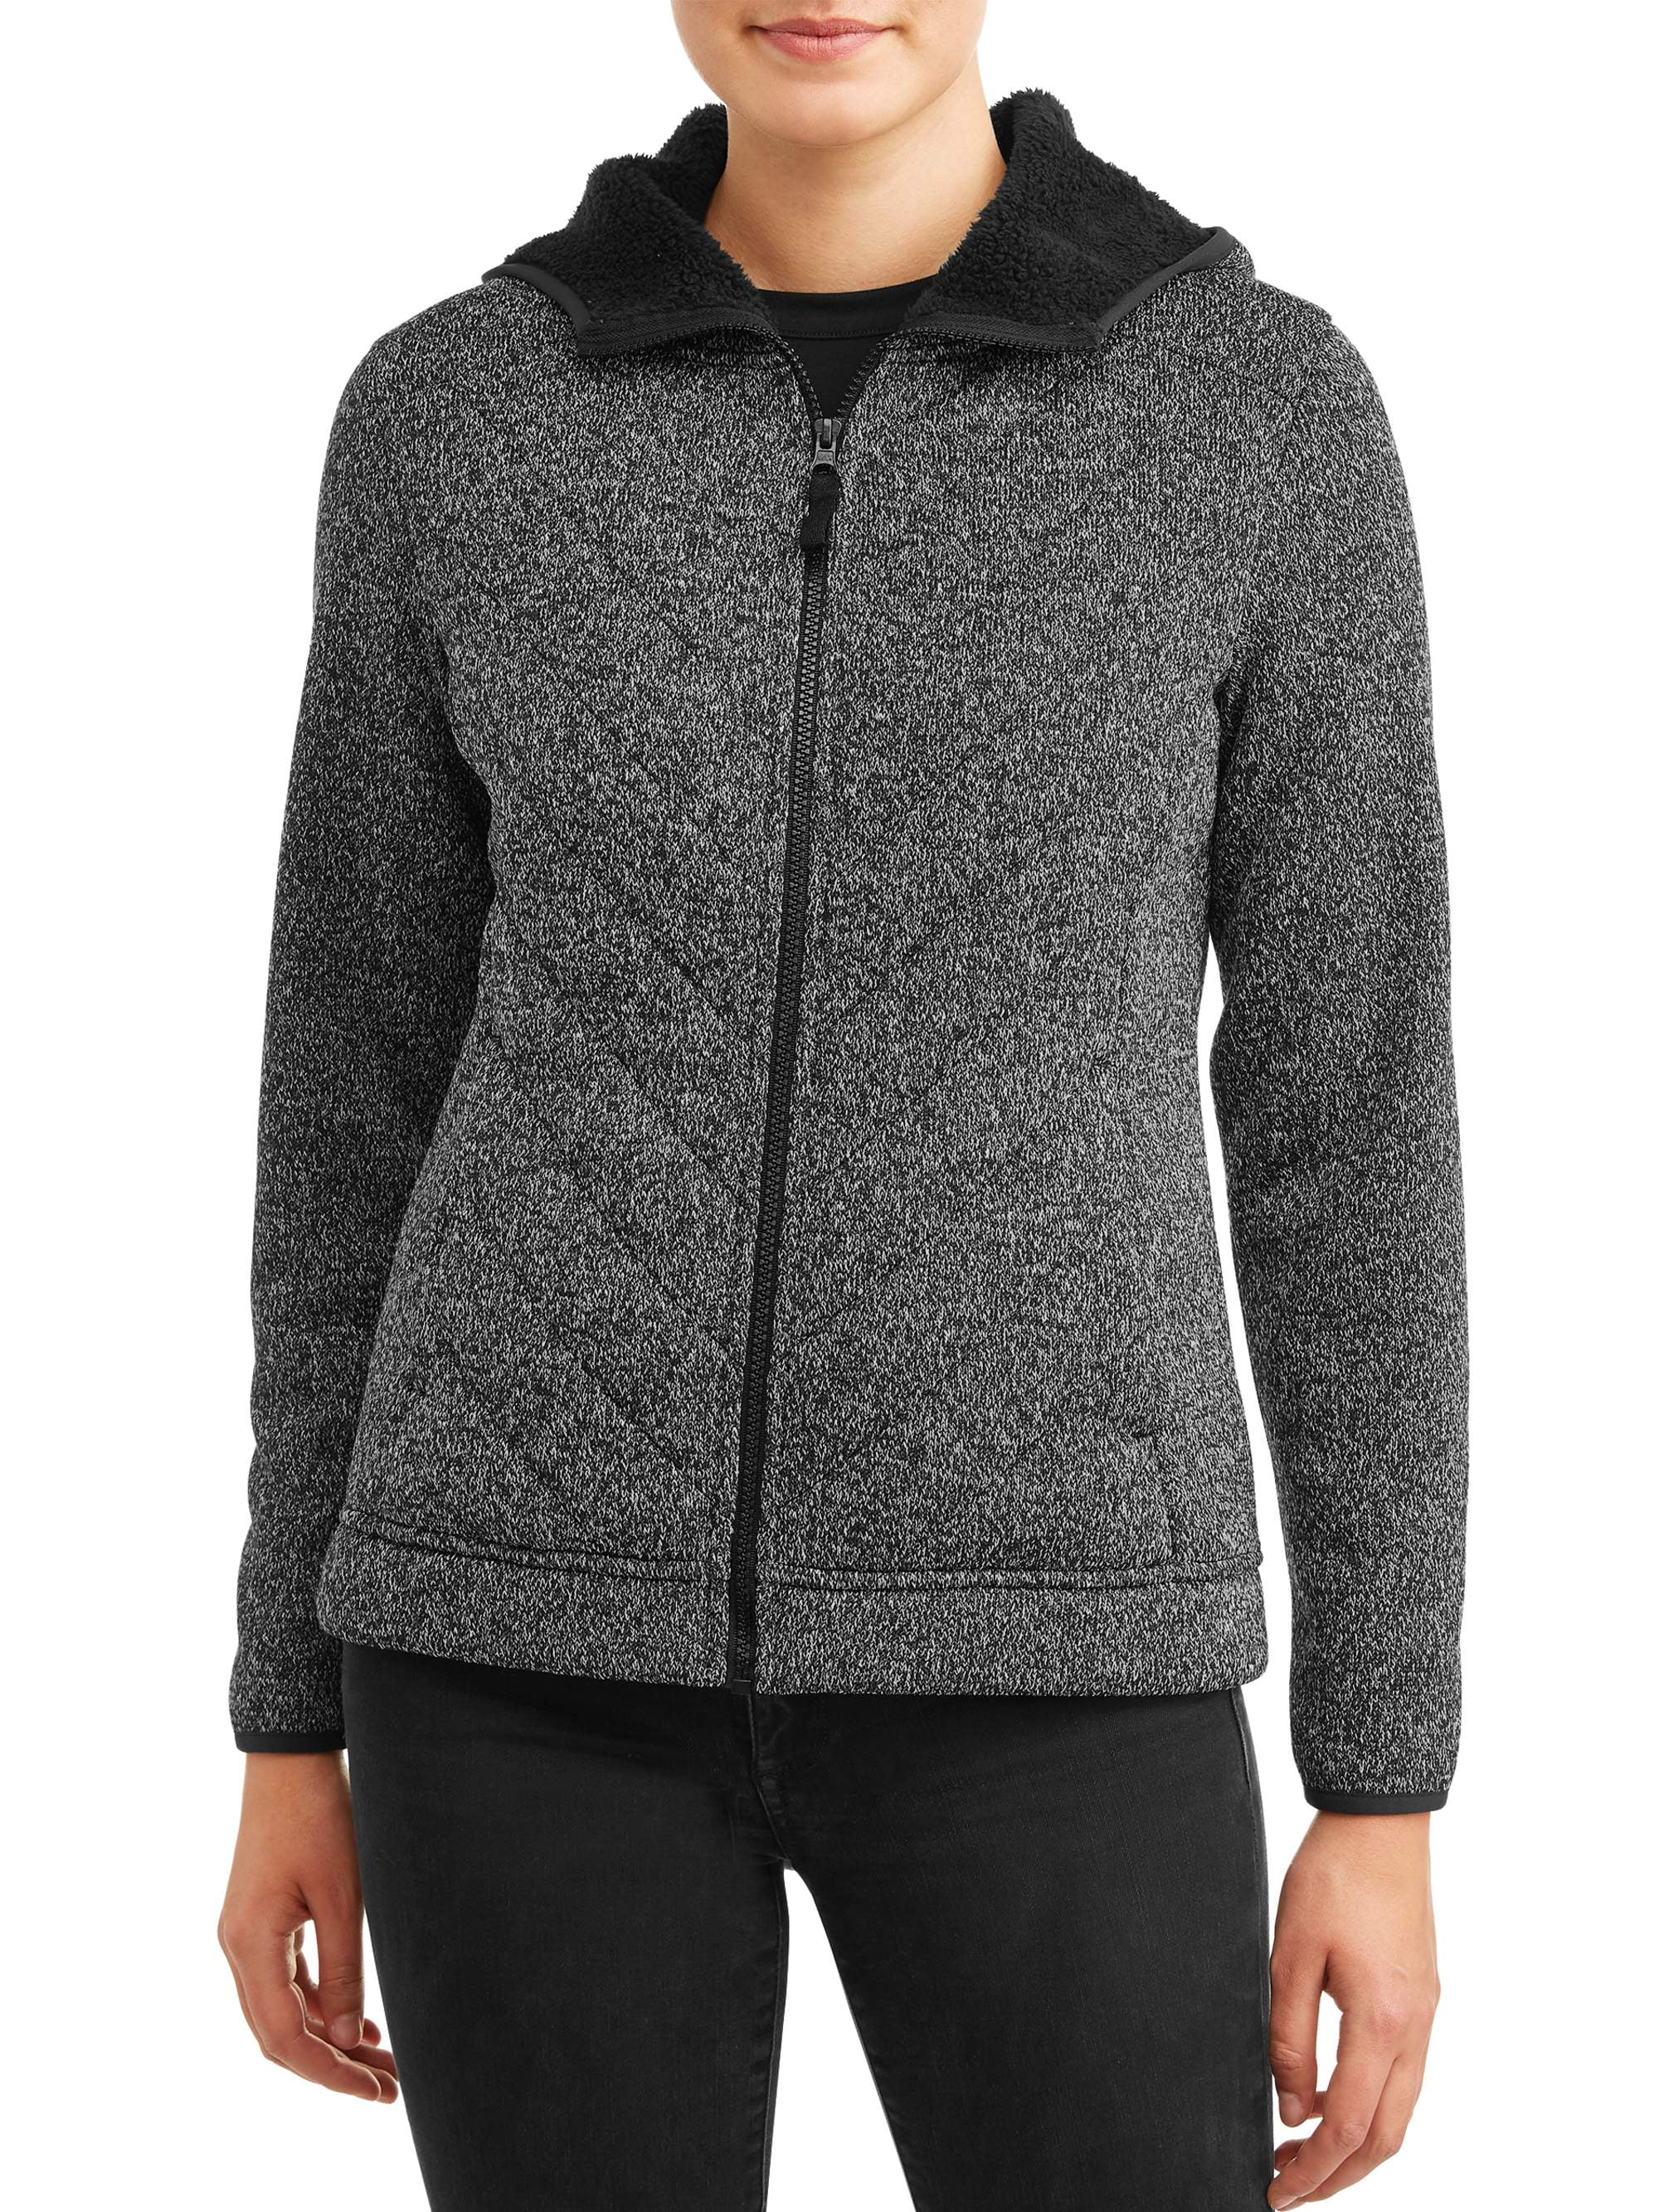 Eigenwijs cel Savant Time and Tru Women's Sweater Fleece Jacket with Sherpa - Walmart.com